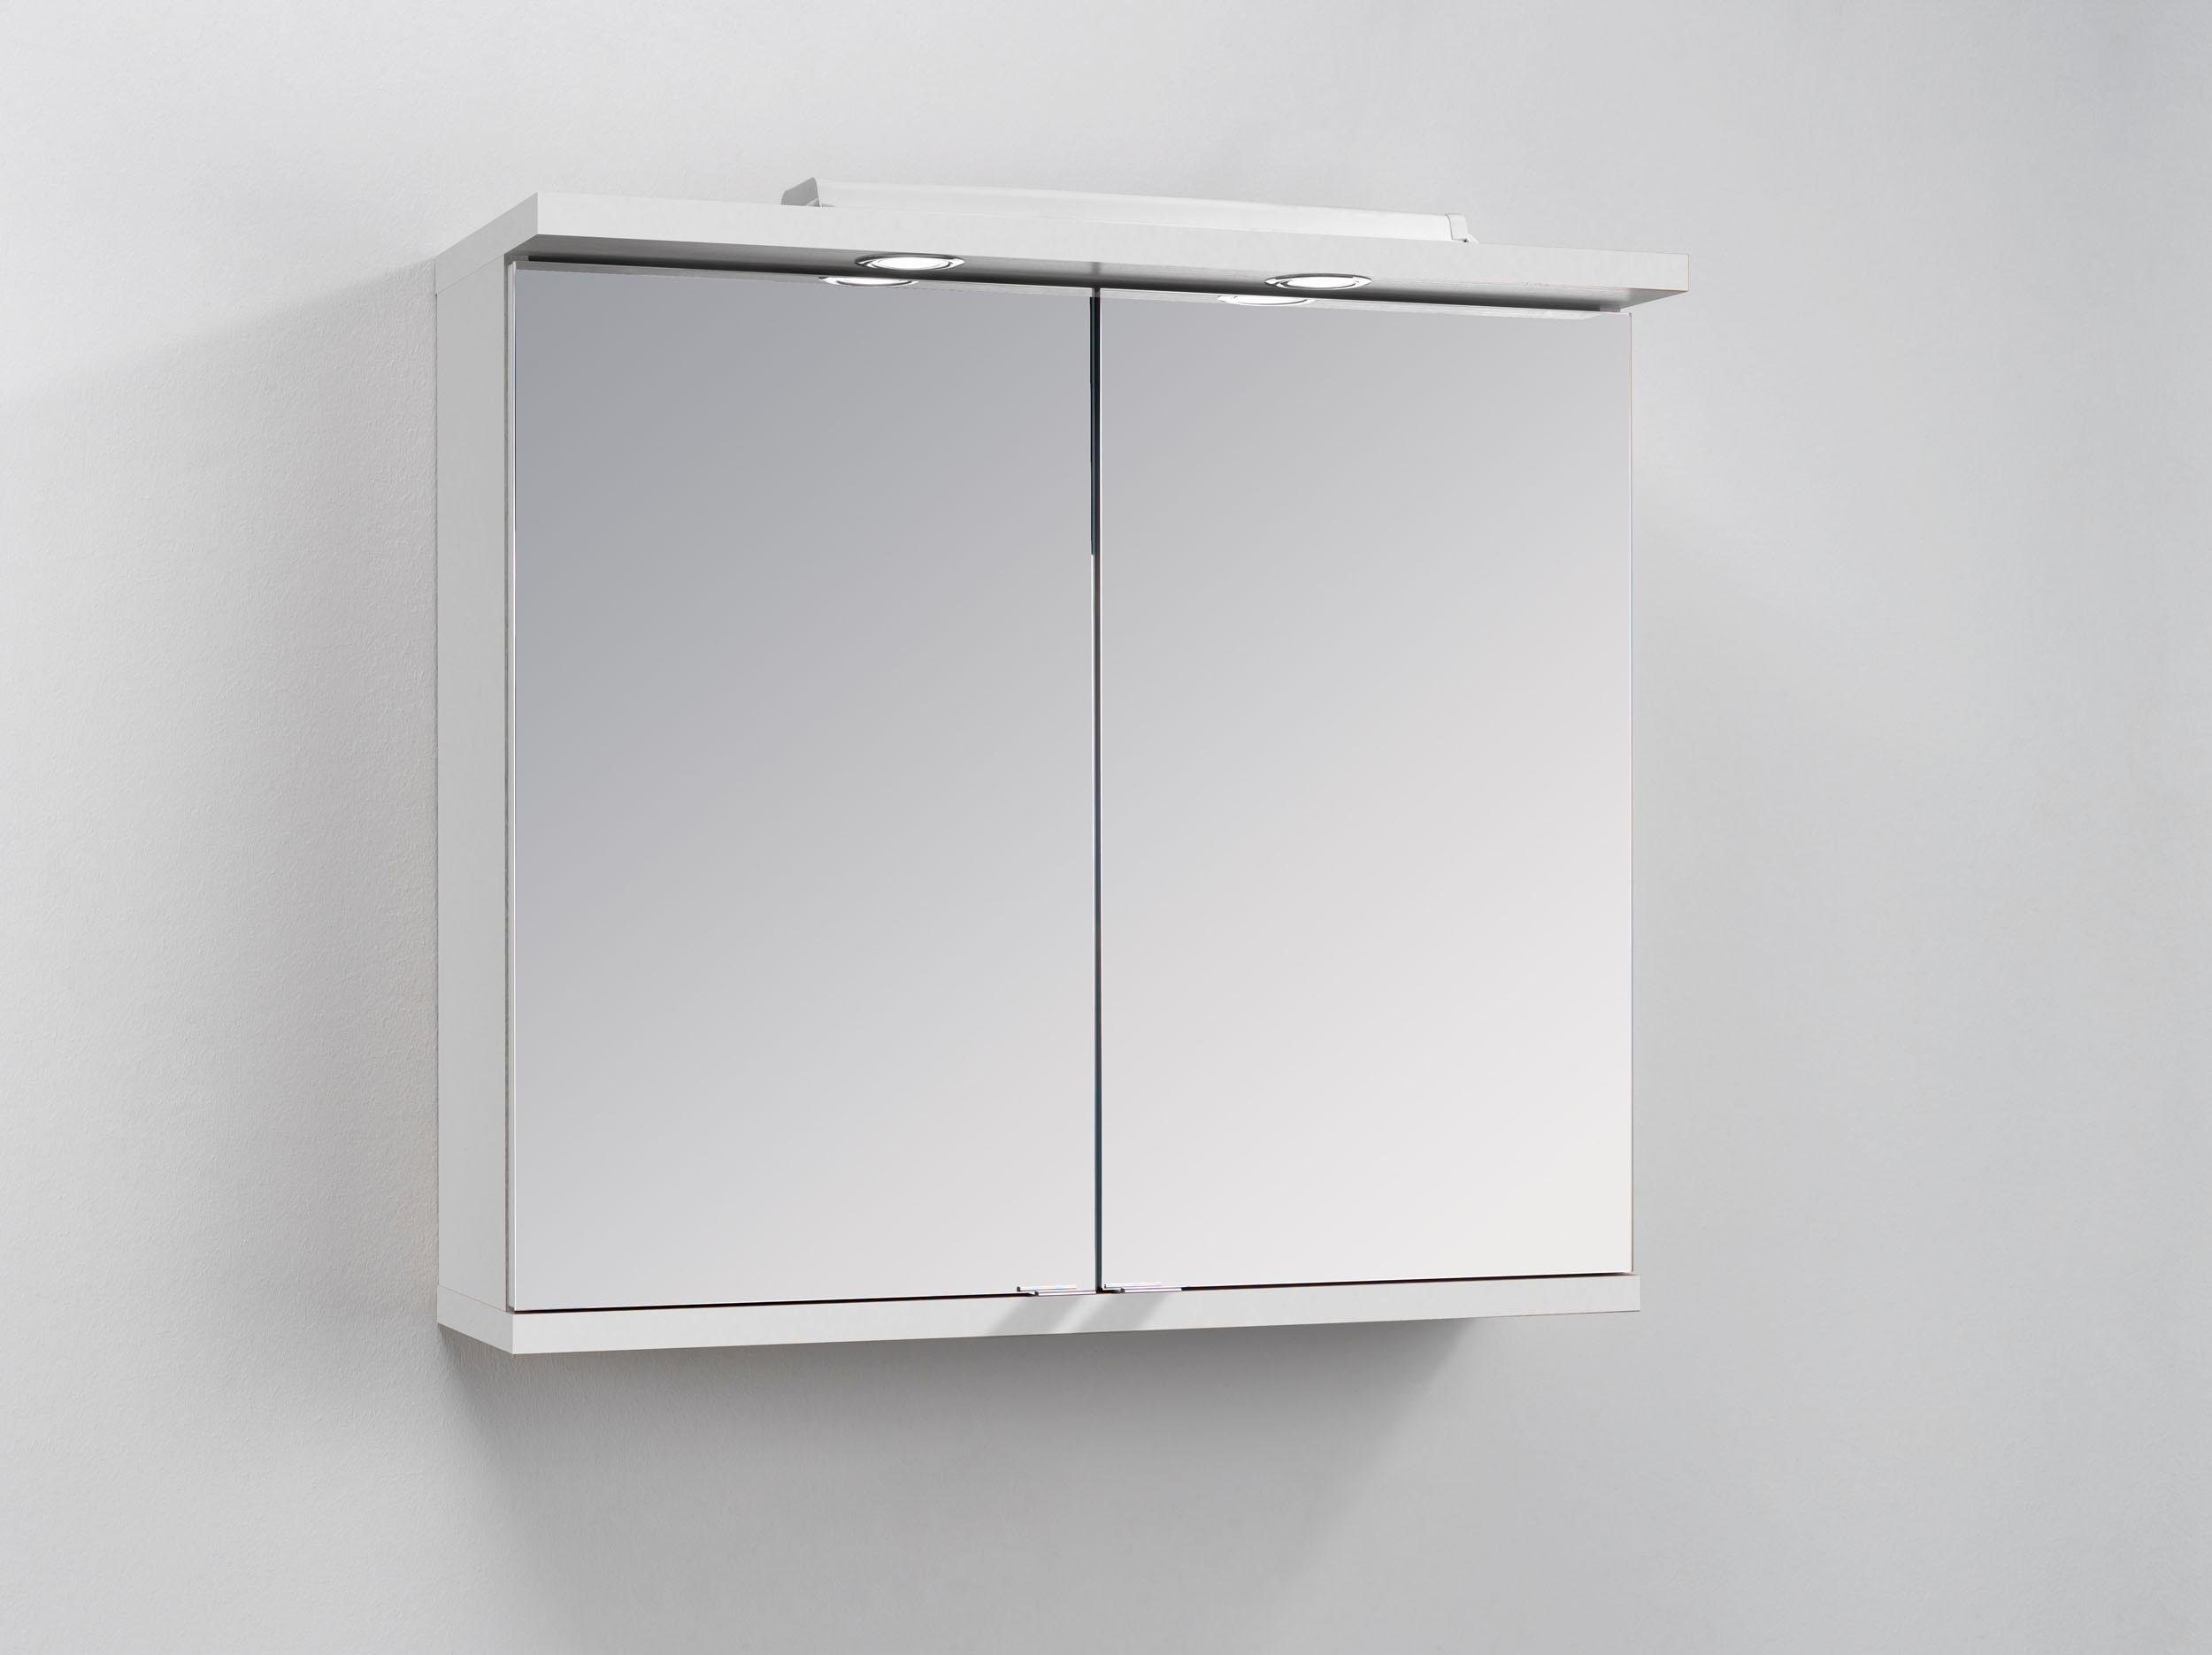 Homexperts Spiegelkast Nusa Breedte 80 cm, met ledverlichting en schakelaar-stopcontactbox, achter de spiegeldeuren praktische legplanken